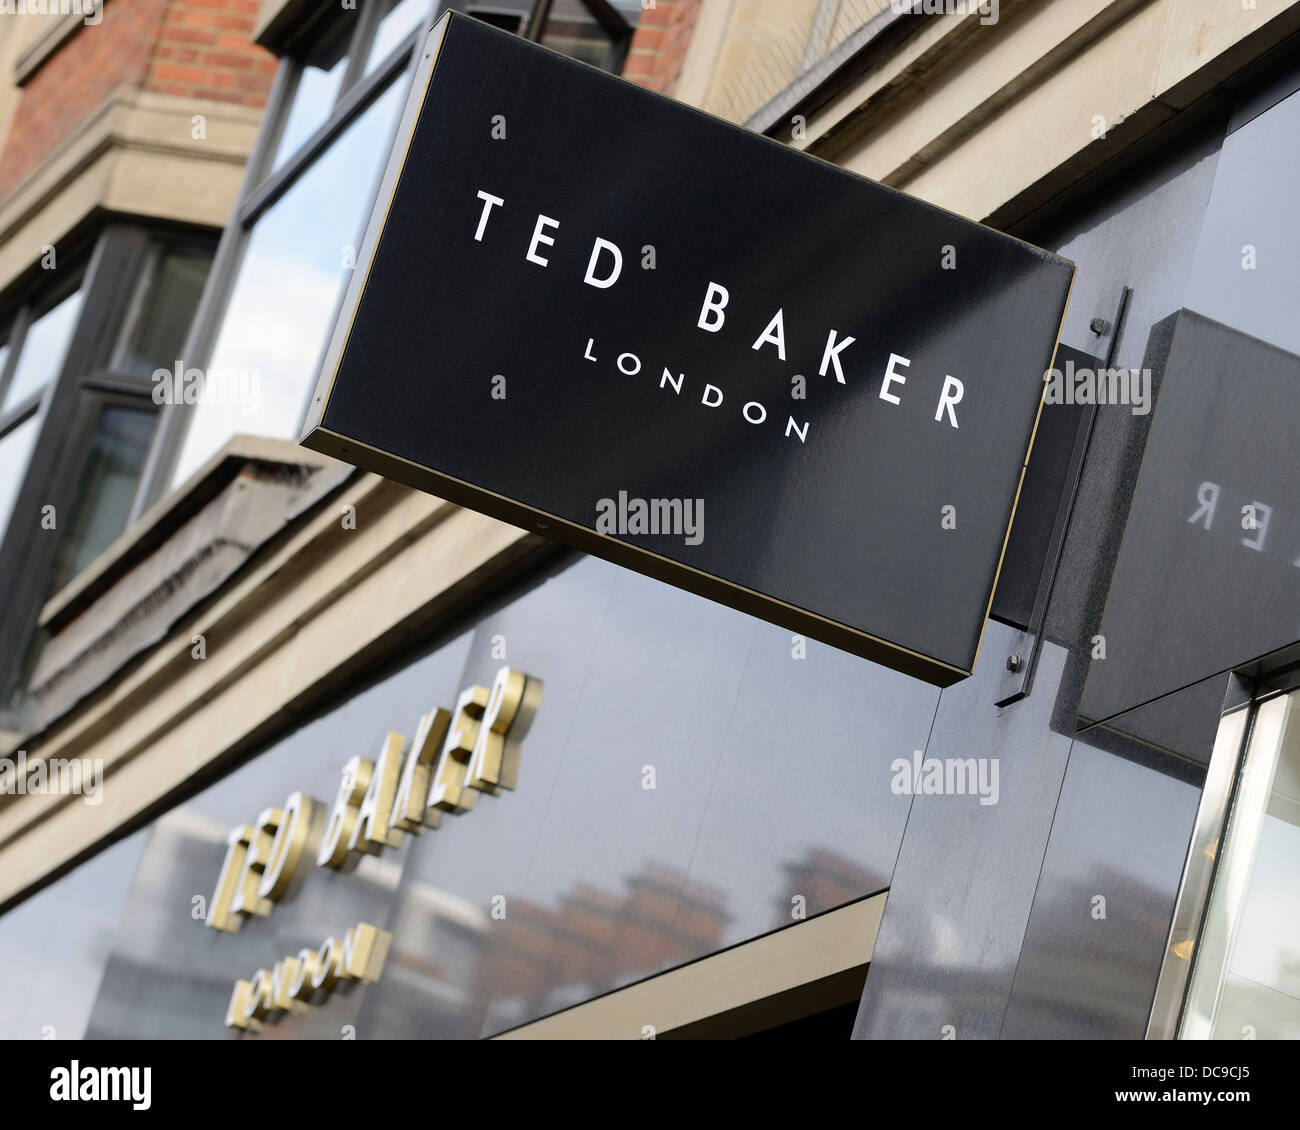 Ted Baker Shop Zeichen, Knightsbridge, London, UK. Stockfoto